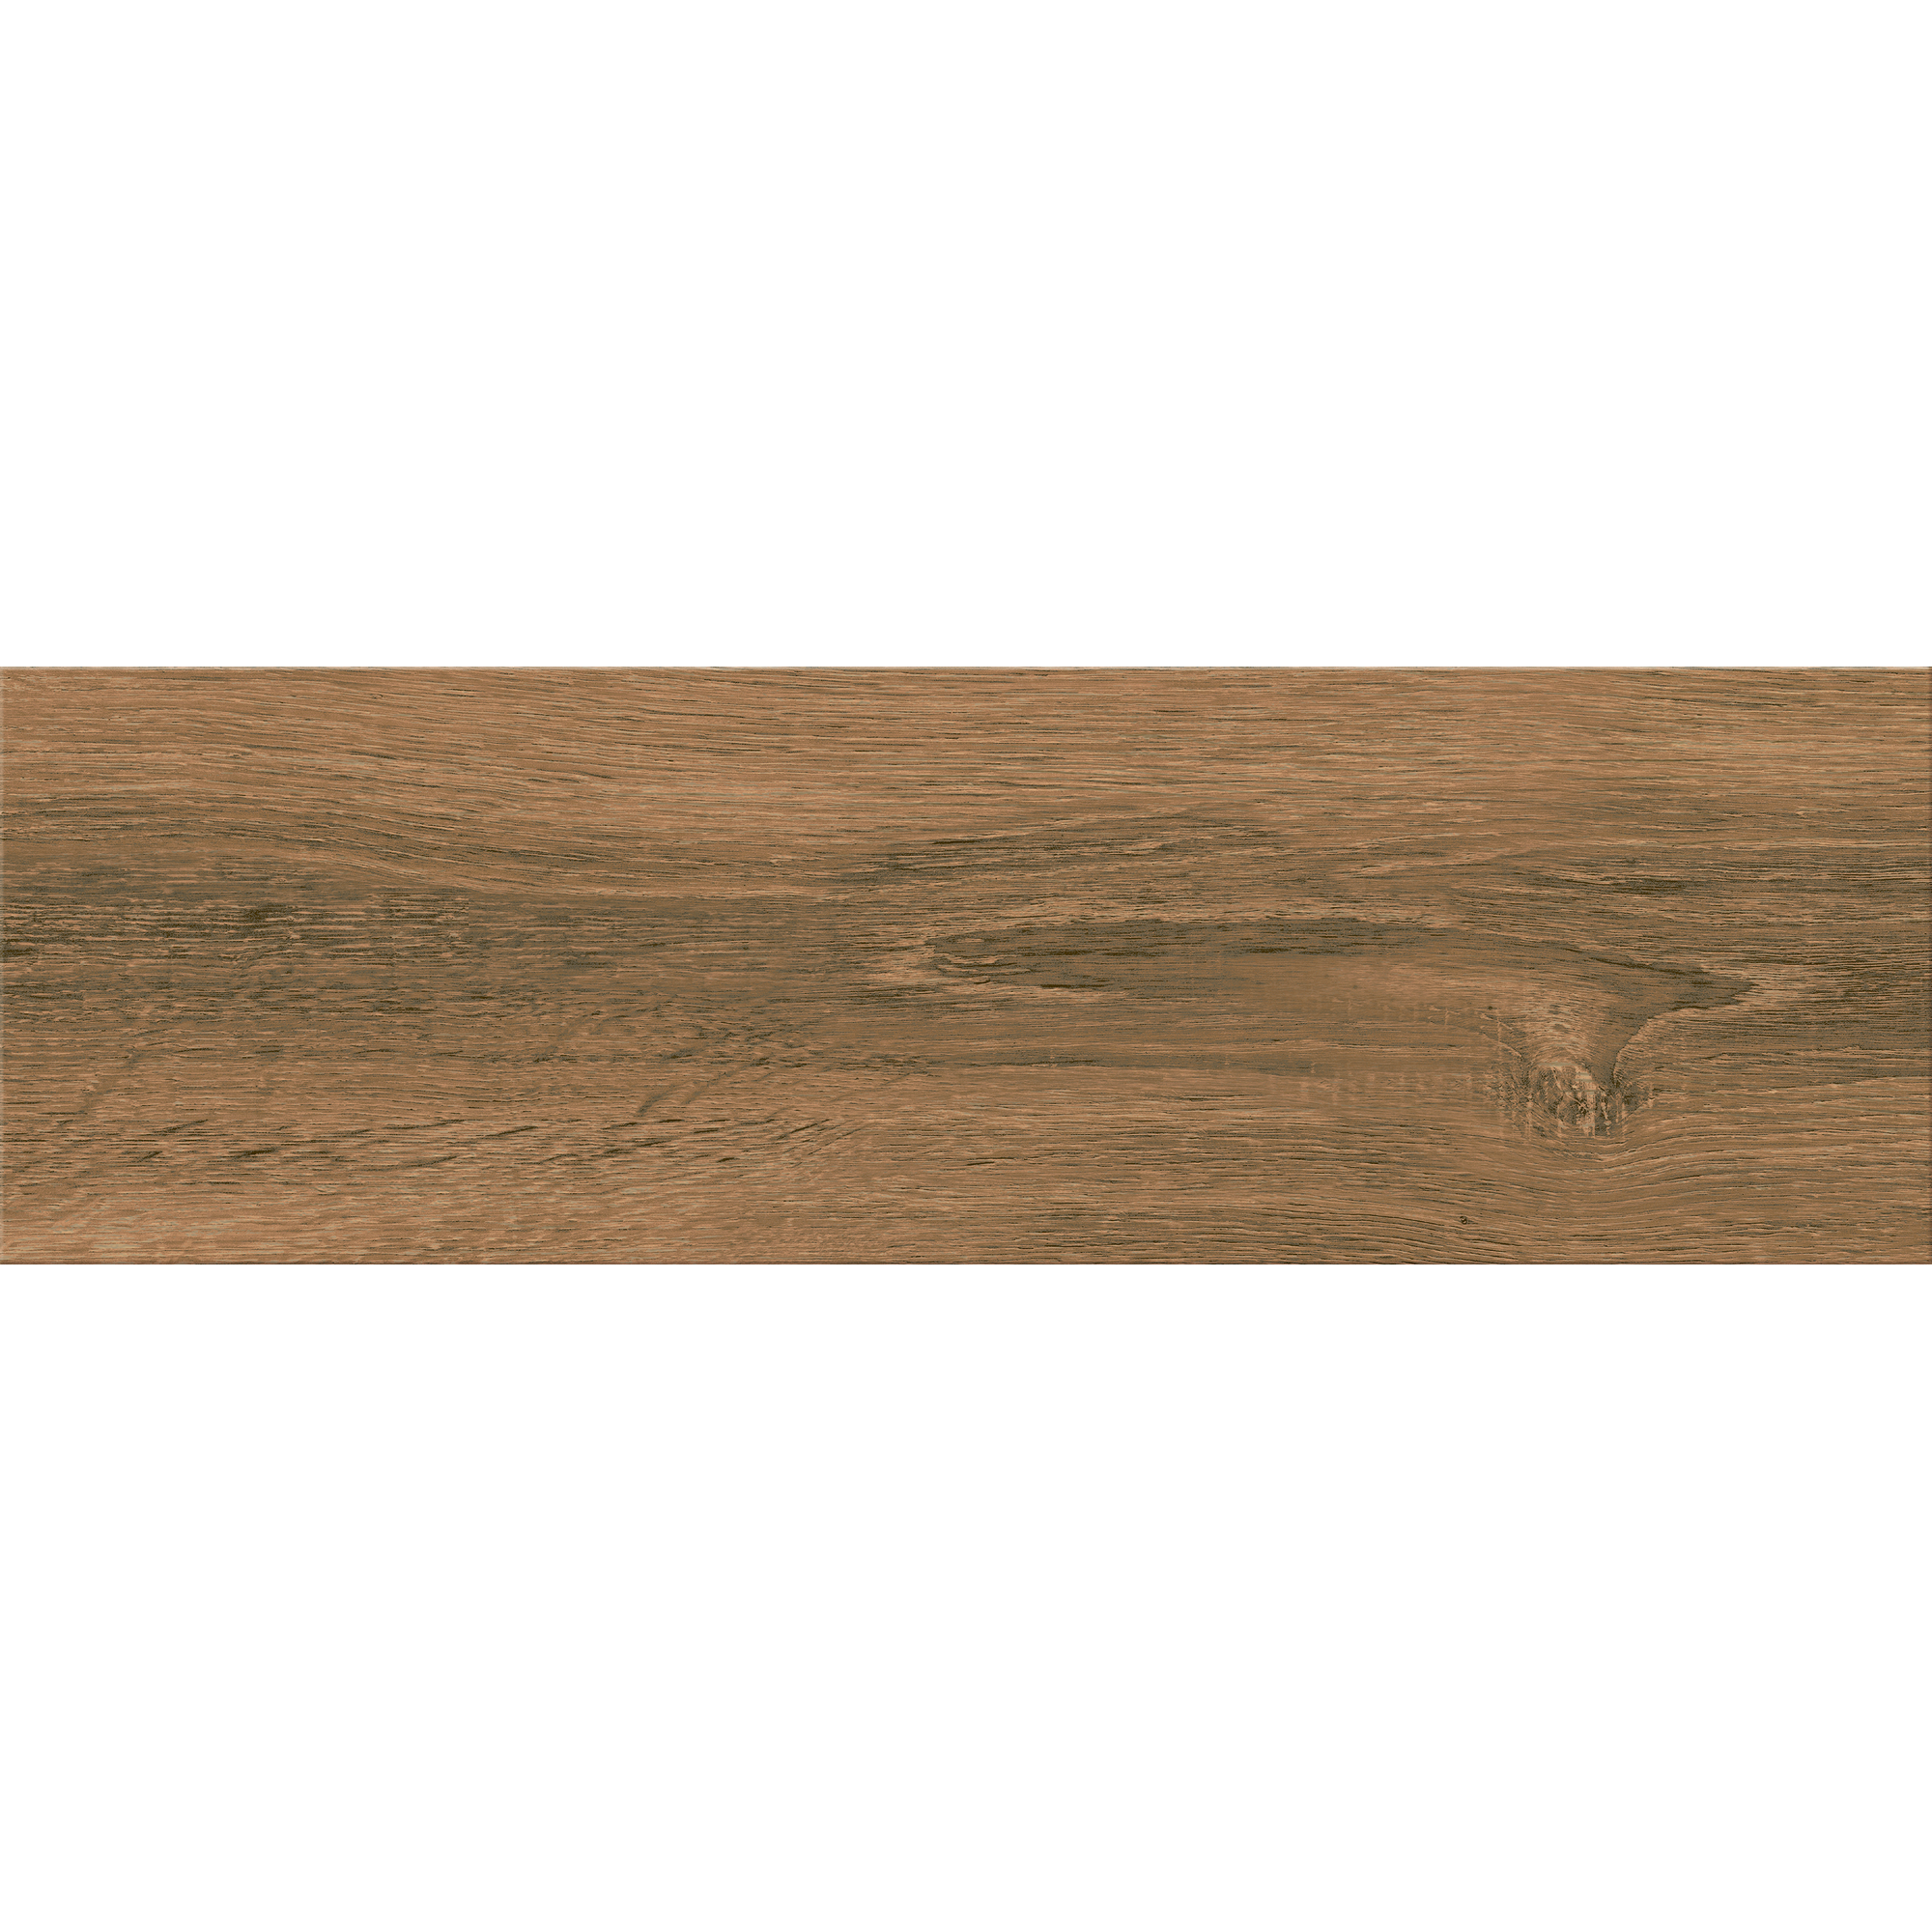 Wand- und Bodenfliese 'Italien wood' Feinsteinzeug braun 18,5 x 59,8 x 0,7 cm + product picture